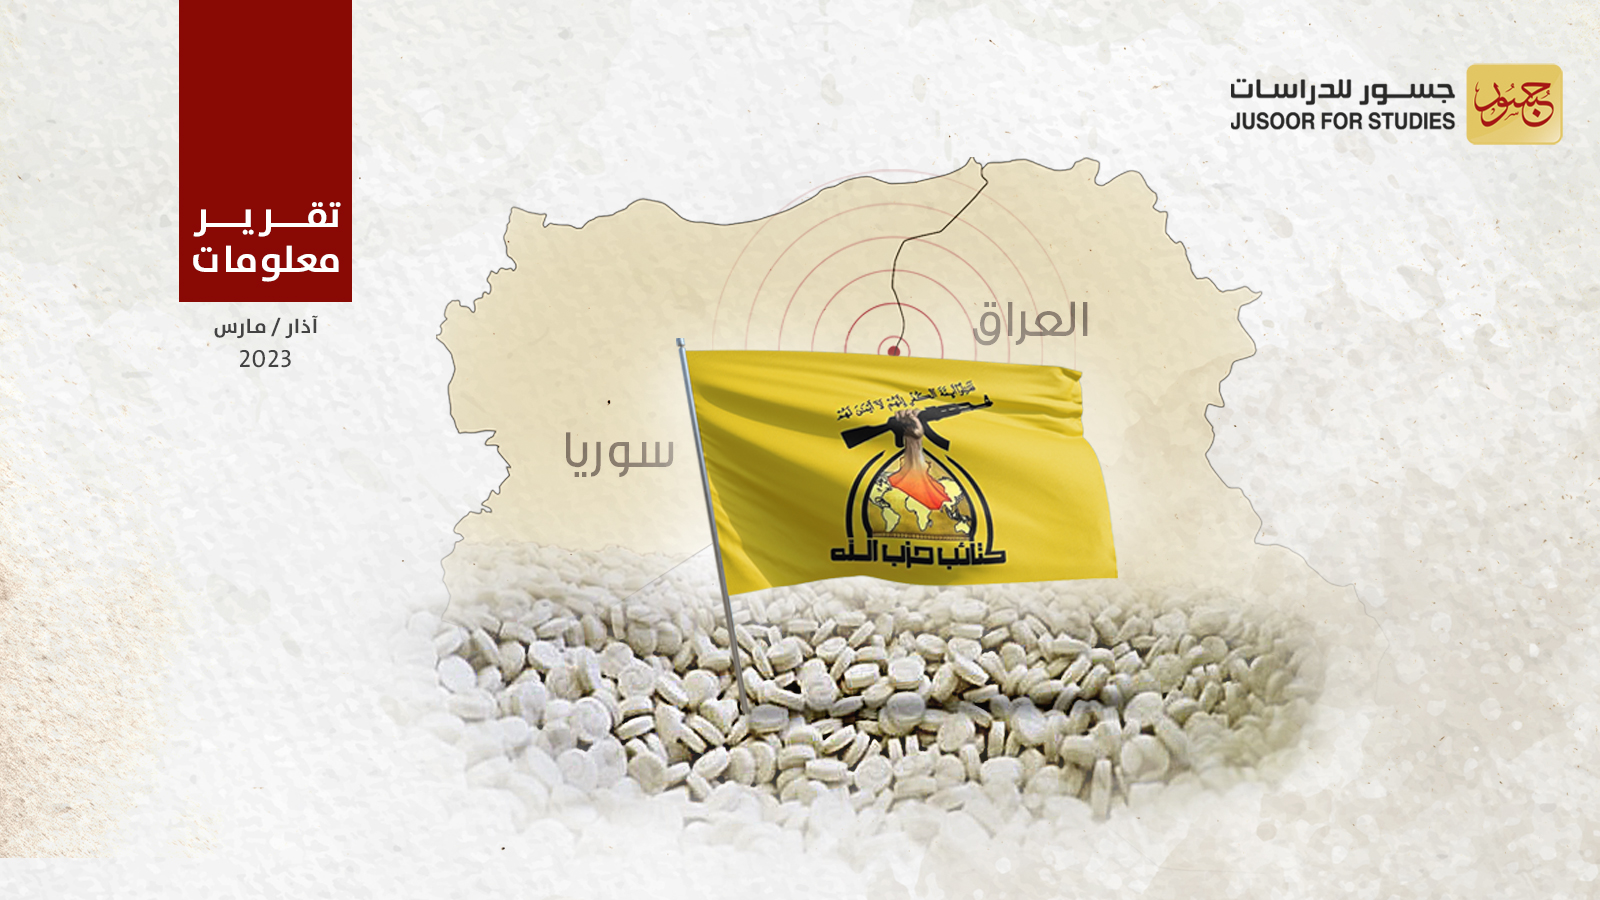 حزب الله العراقي يحفر أنفاقاً بين العراق وسورية لنقل الأسلحة والمخدرات